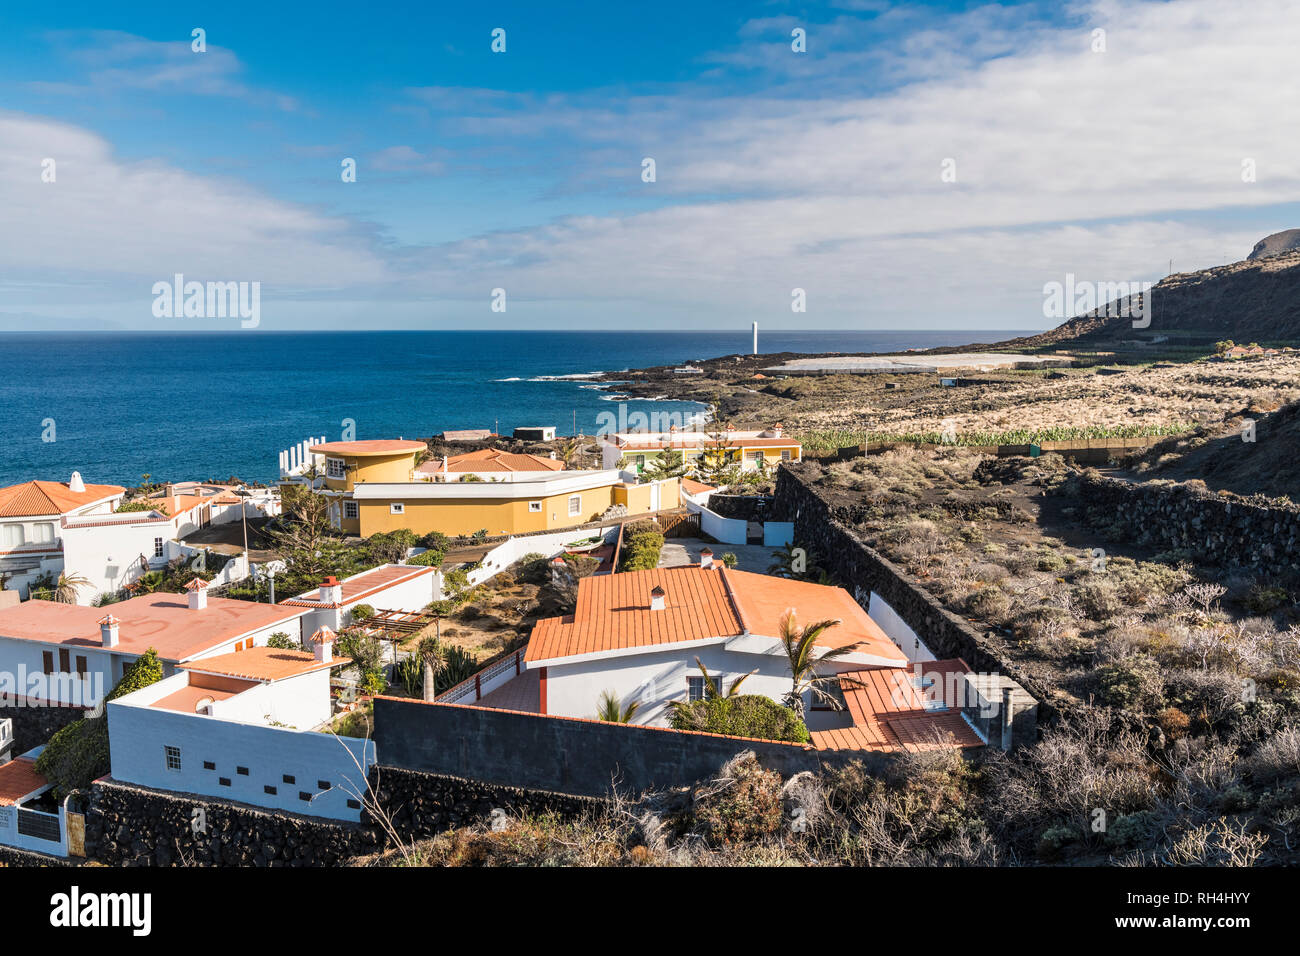 Vue sur la station balnéaire de la Salemera sur la côte est de la Palma, aux îles Canaries, avec des maisons caractéristiques avec des toits en tuiles rouges Banque D'Images